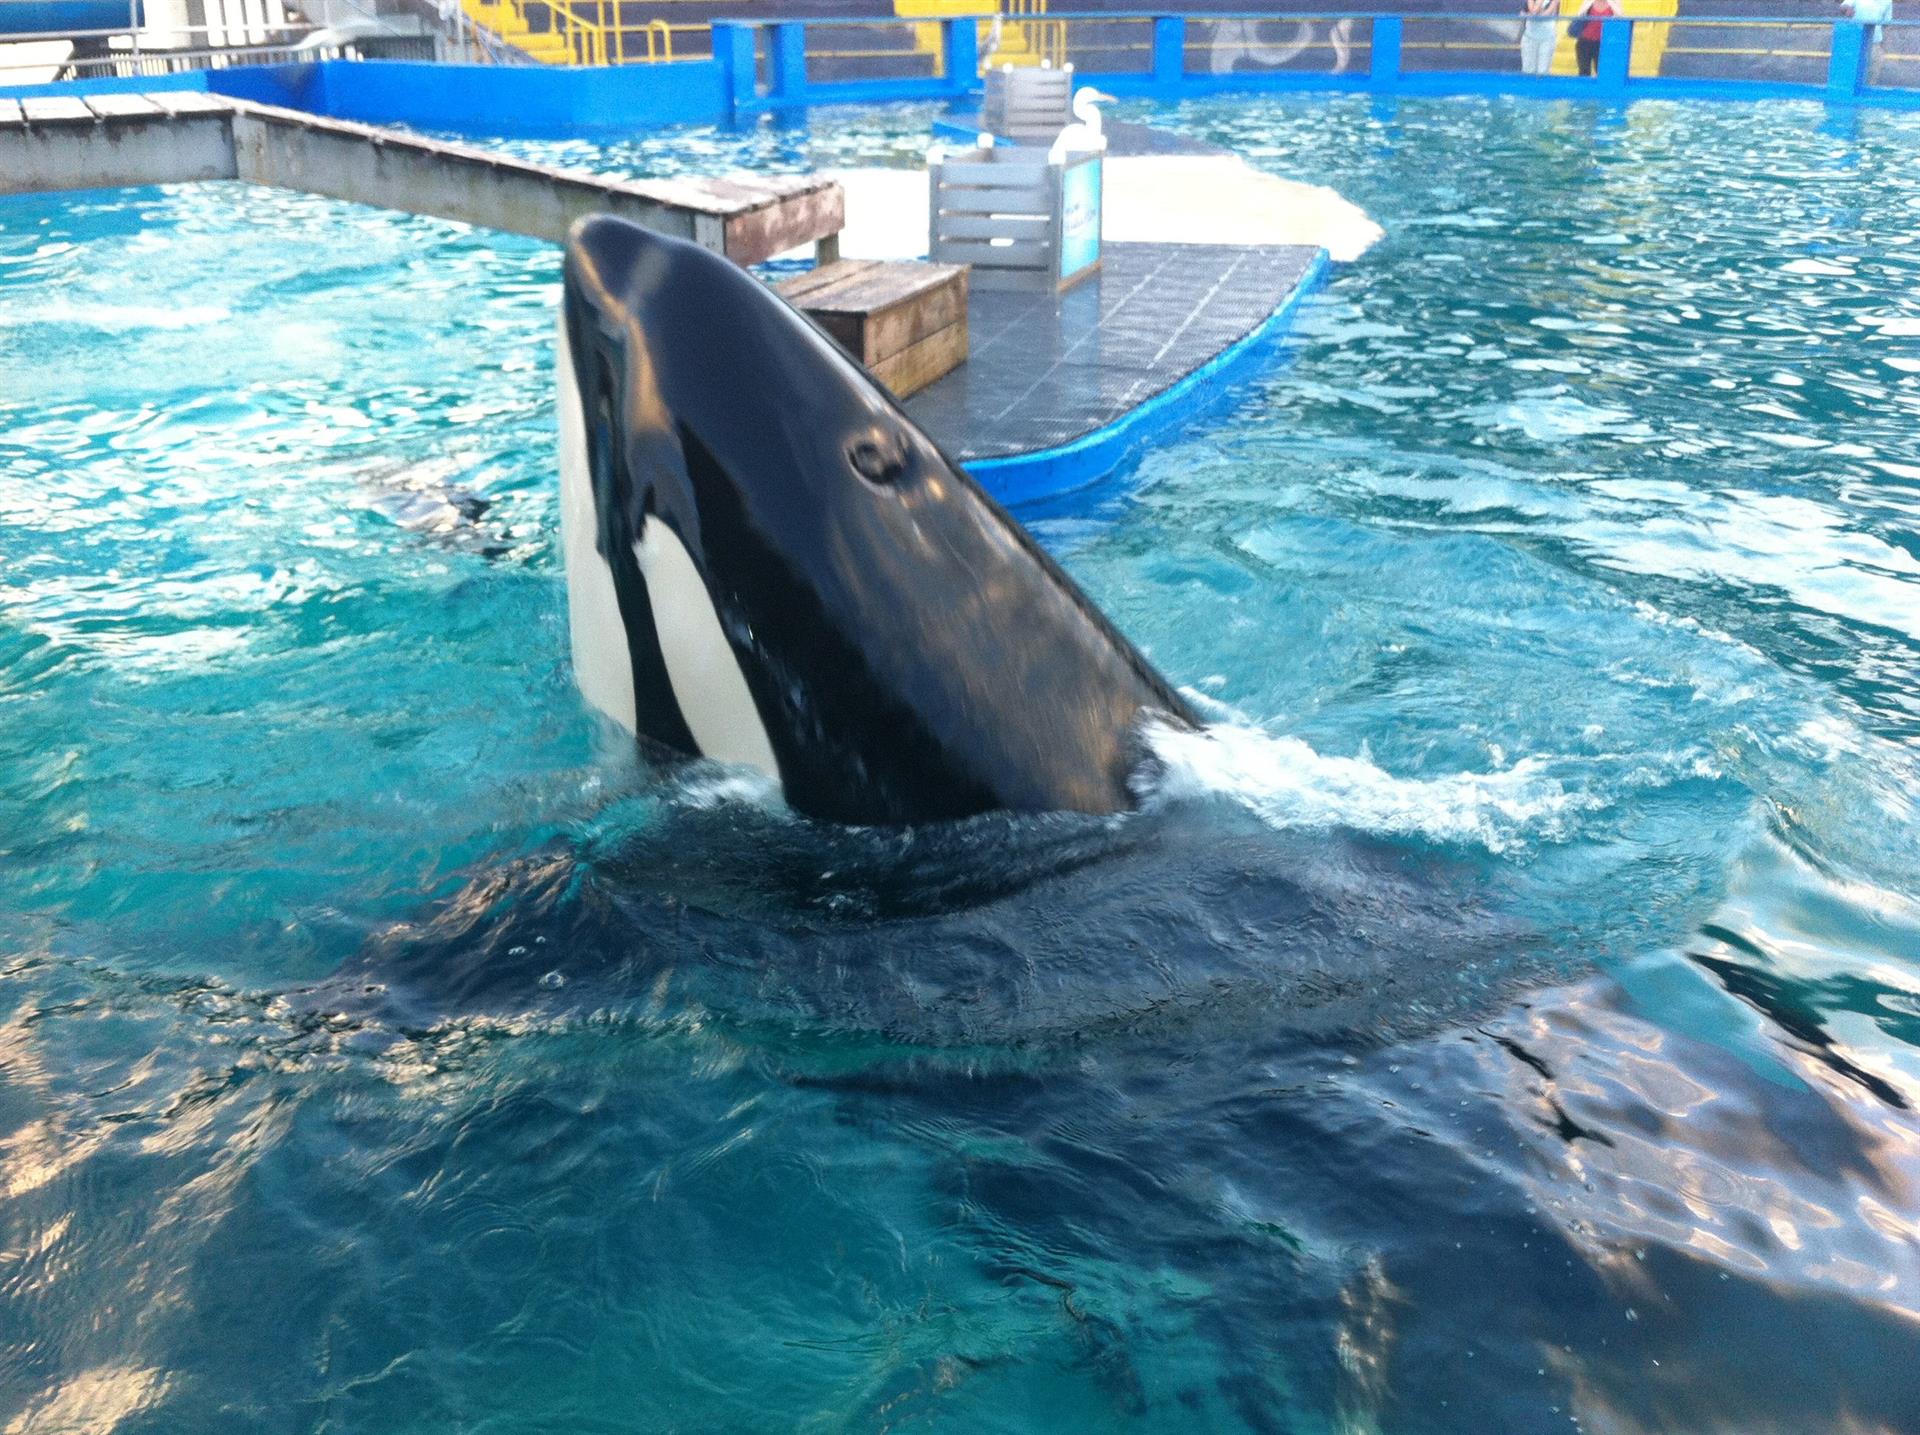 Imagen de archivo en la que se observa la orca Lolita en un acuario del Miami Seaquarium en Florida. EFE/MAR GONZALO
